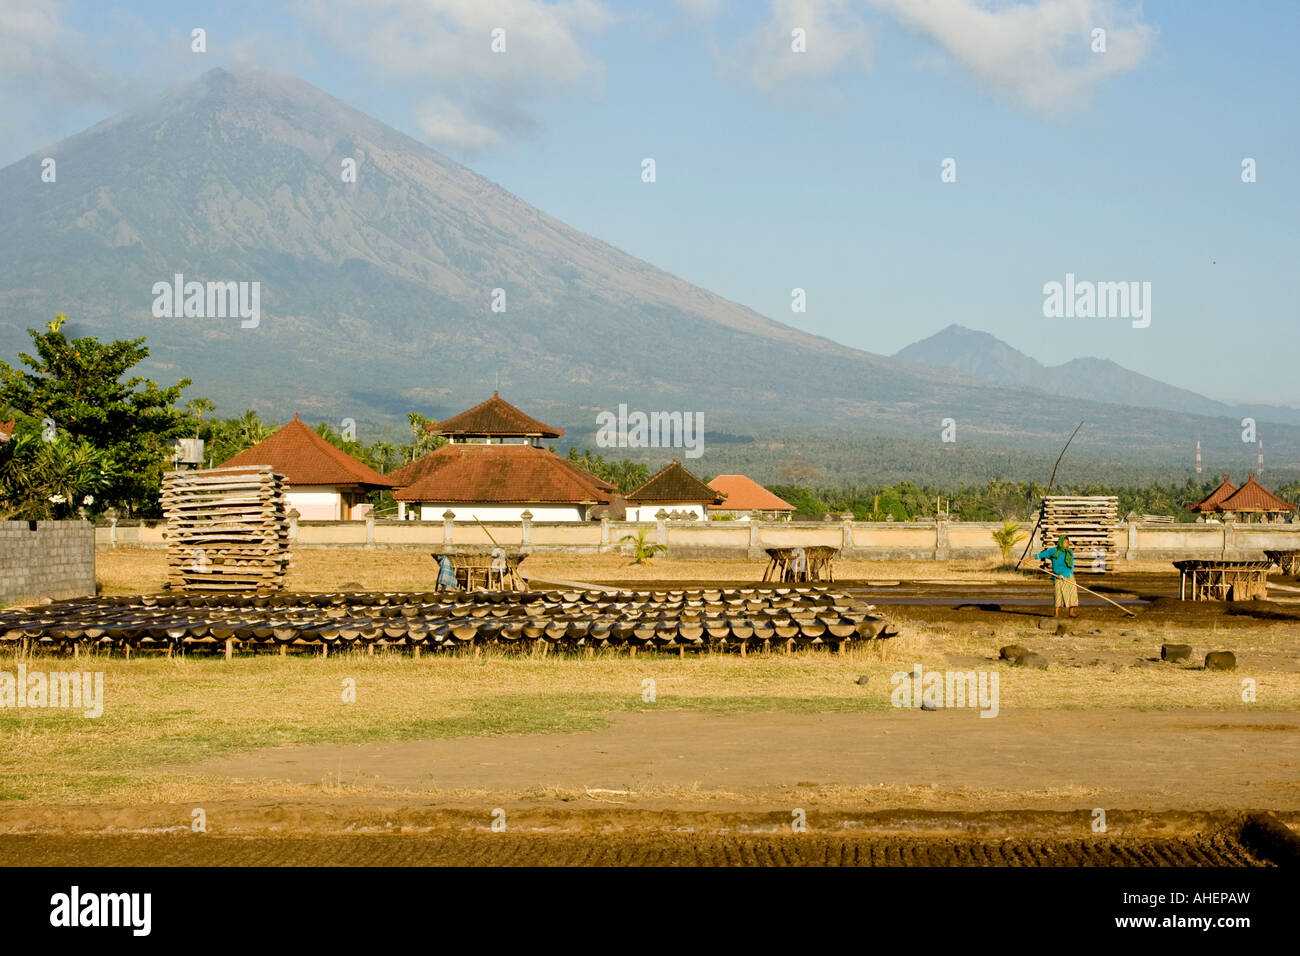 La production de sel artisanal à Gunung Agung Bali Amed distance Indonésie Banque D'Images